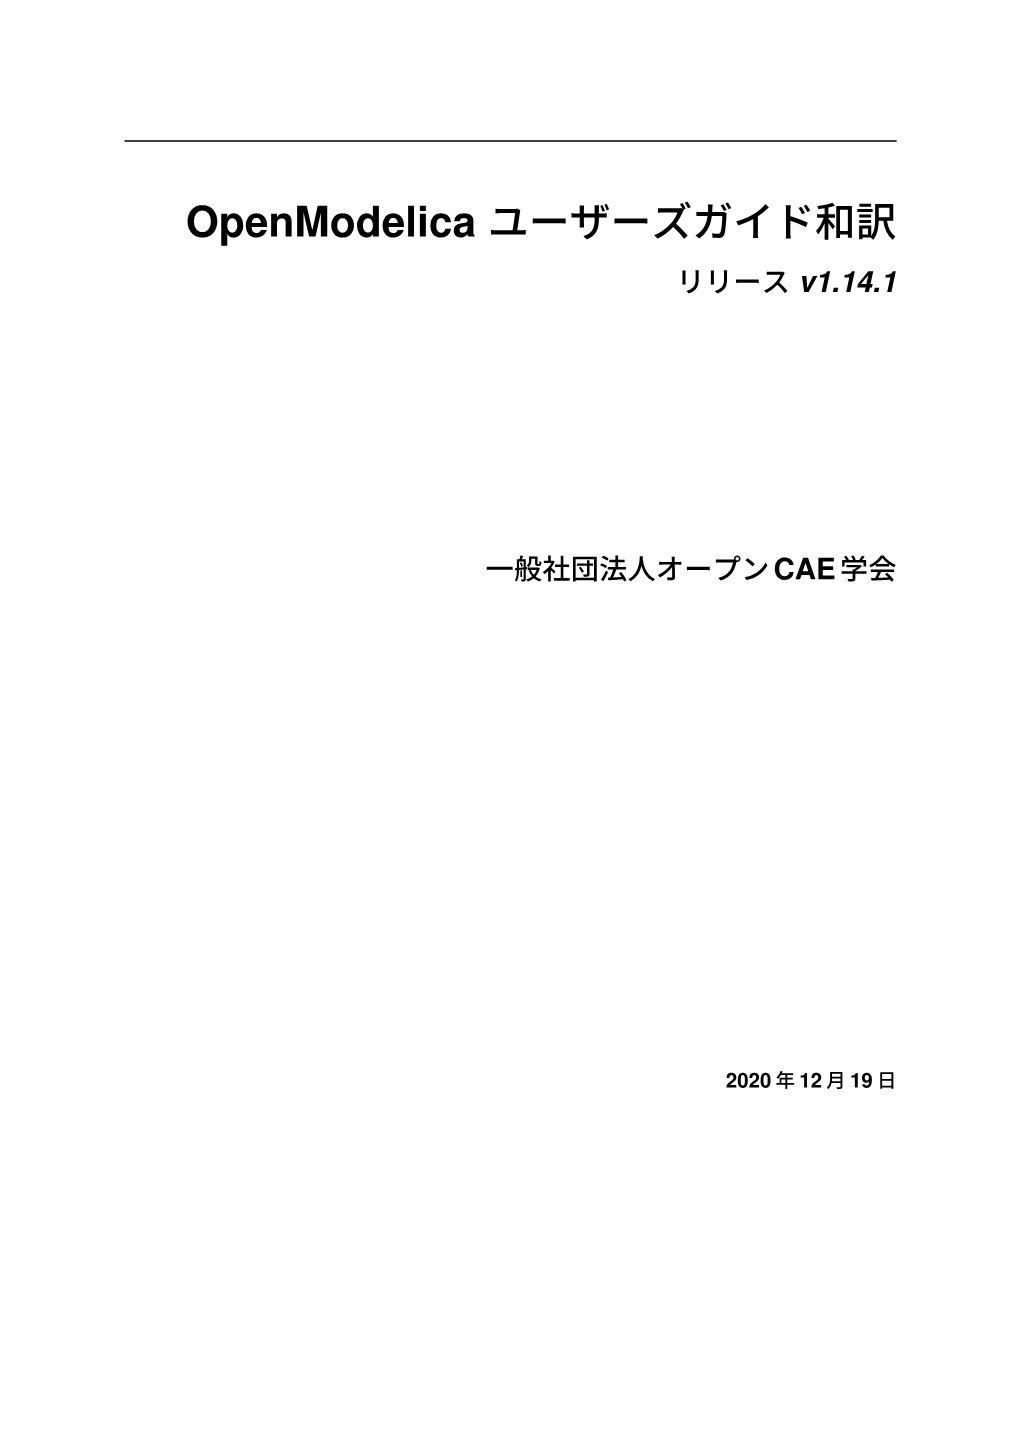 Openmodelica ユーザーズガイド和訳 リリース V1.14.1